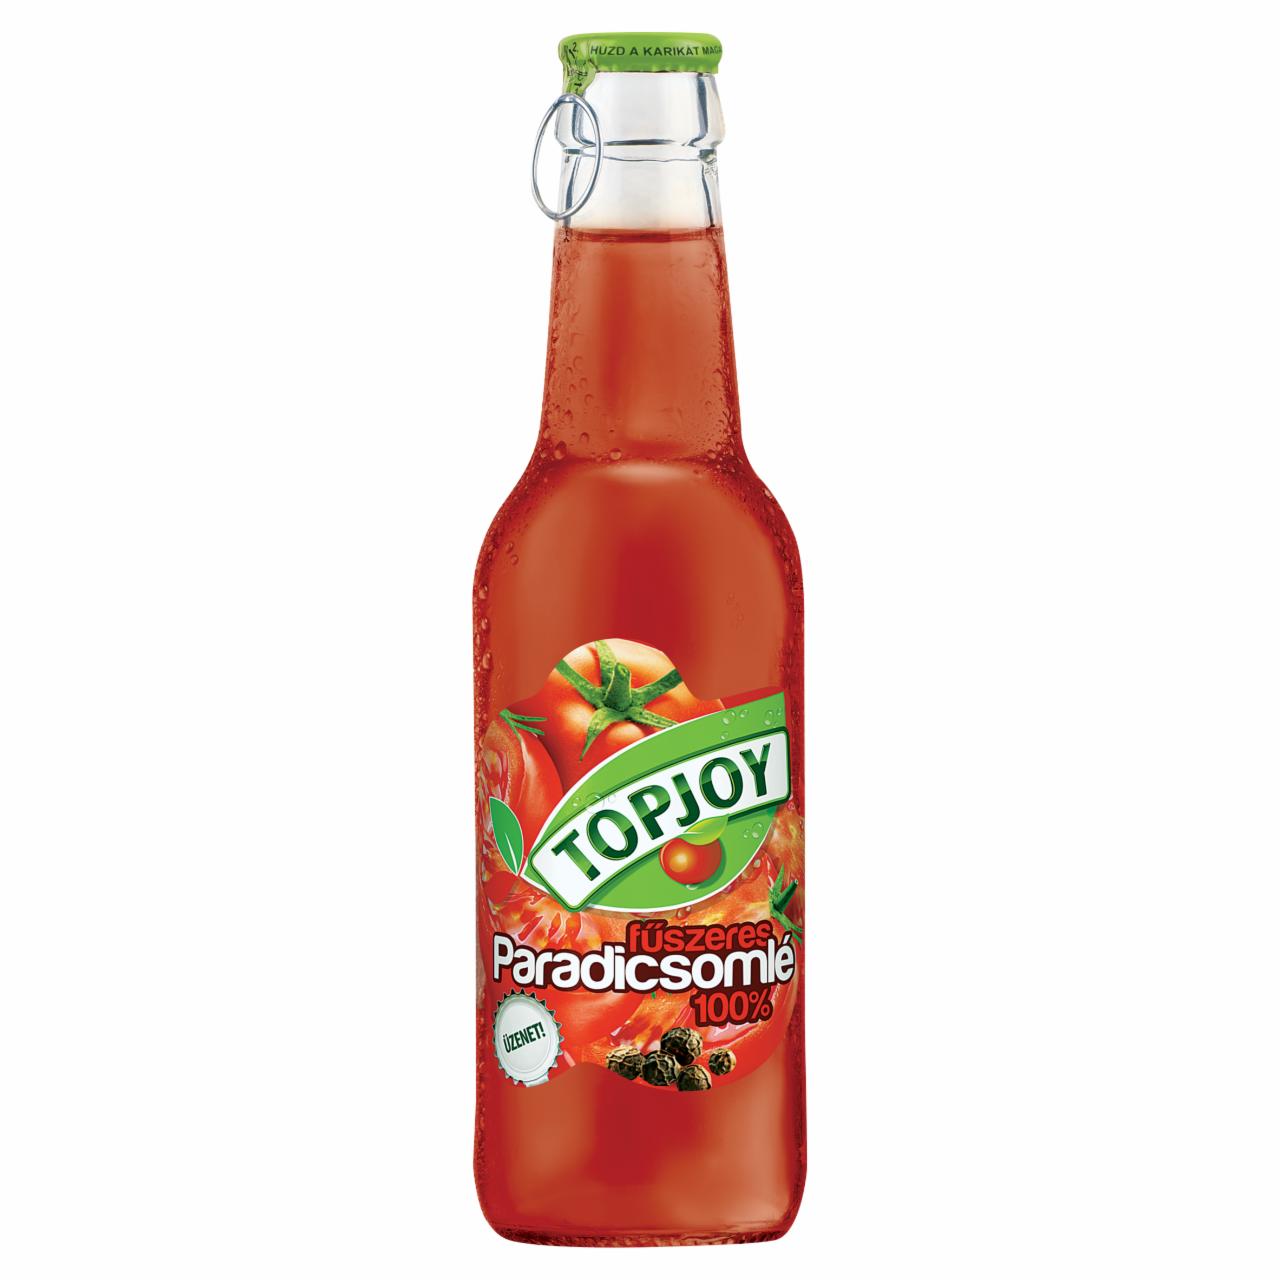 Képek - Topjoy 100% fűszeres paradicsomlé 250 ml